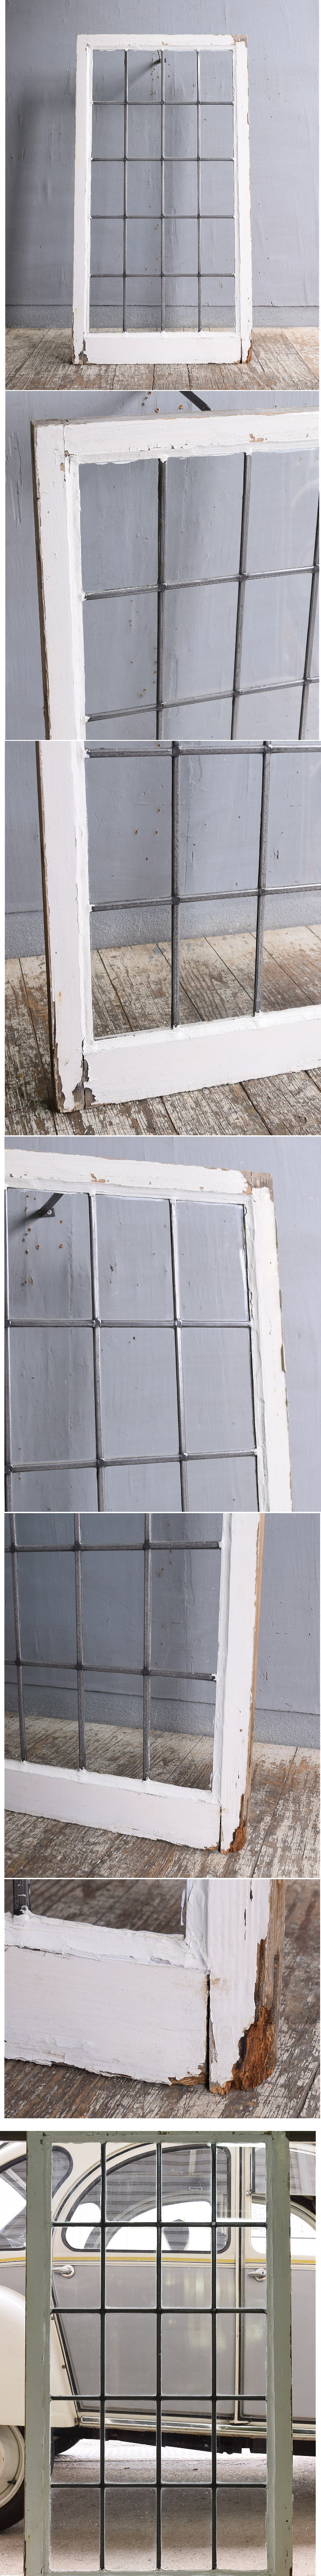 イギリス アンティーク 窓 無色透明 11915